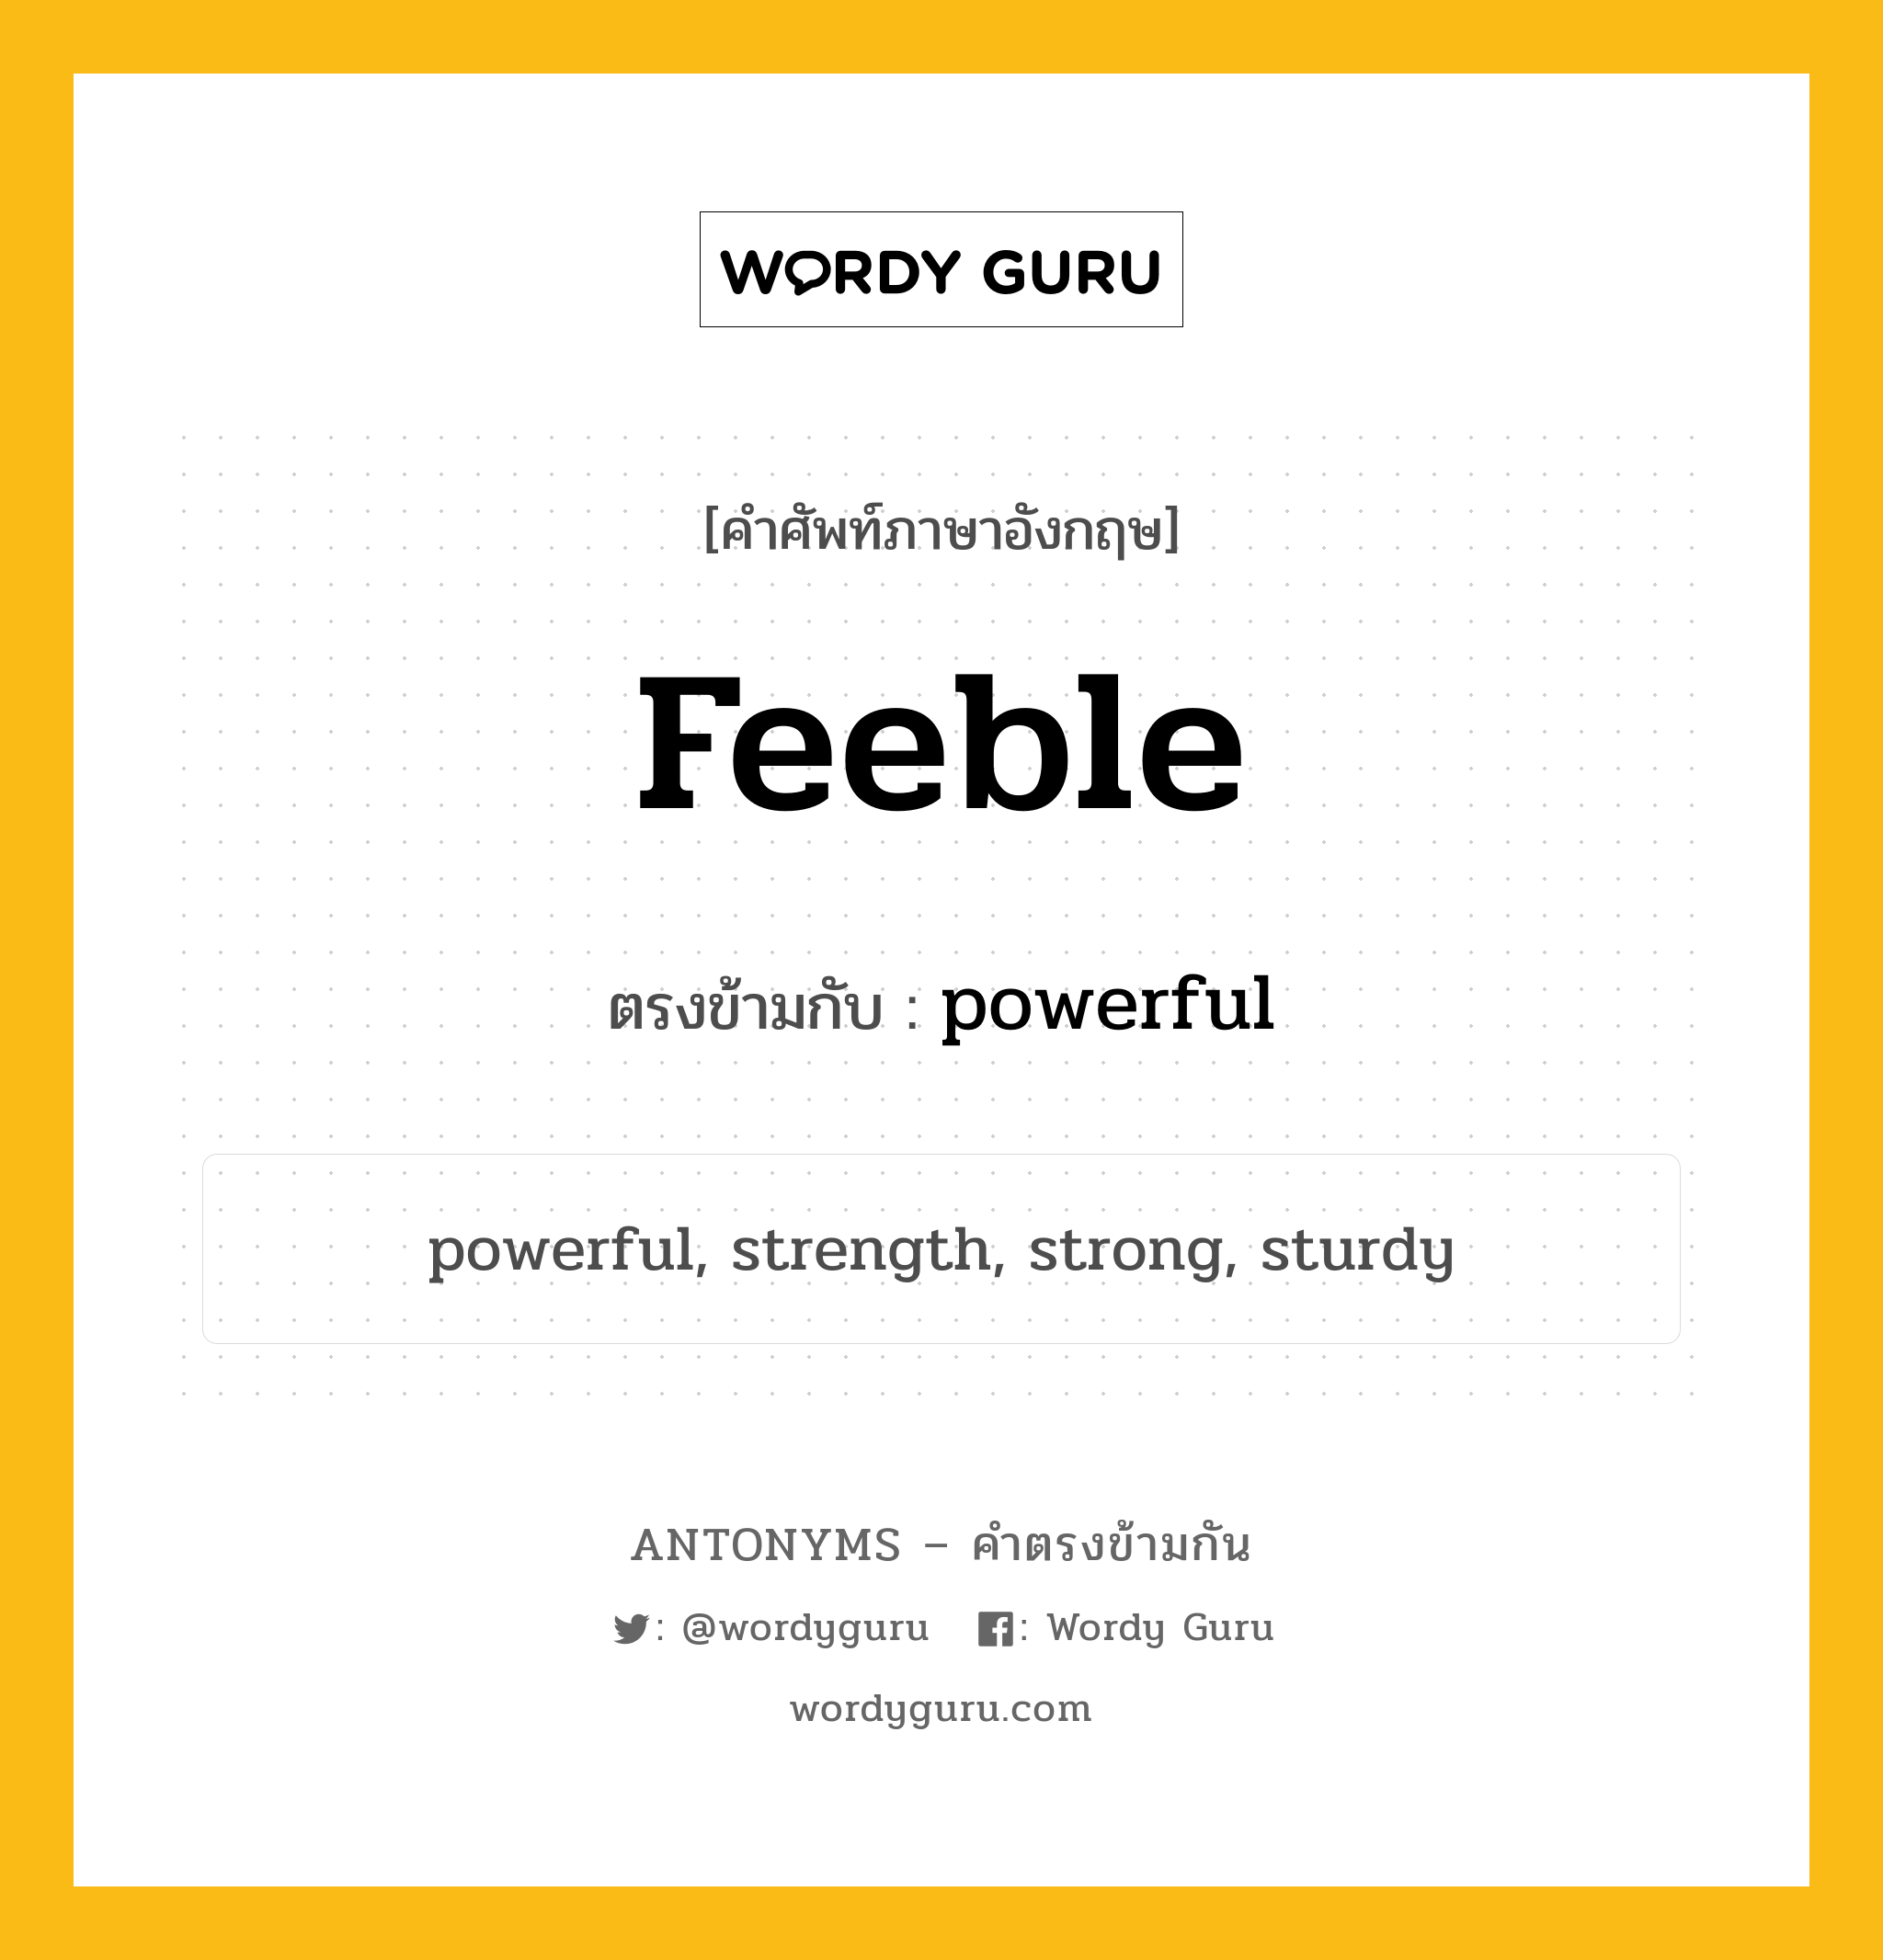 feeble เป็นคำตรงข้ามกับคำไหนบ้าง?, คำศัพท์ภาษาอังกฤษ feeble ตรงข้ามกับ powerful หมวด powerful